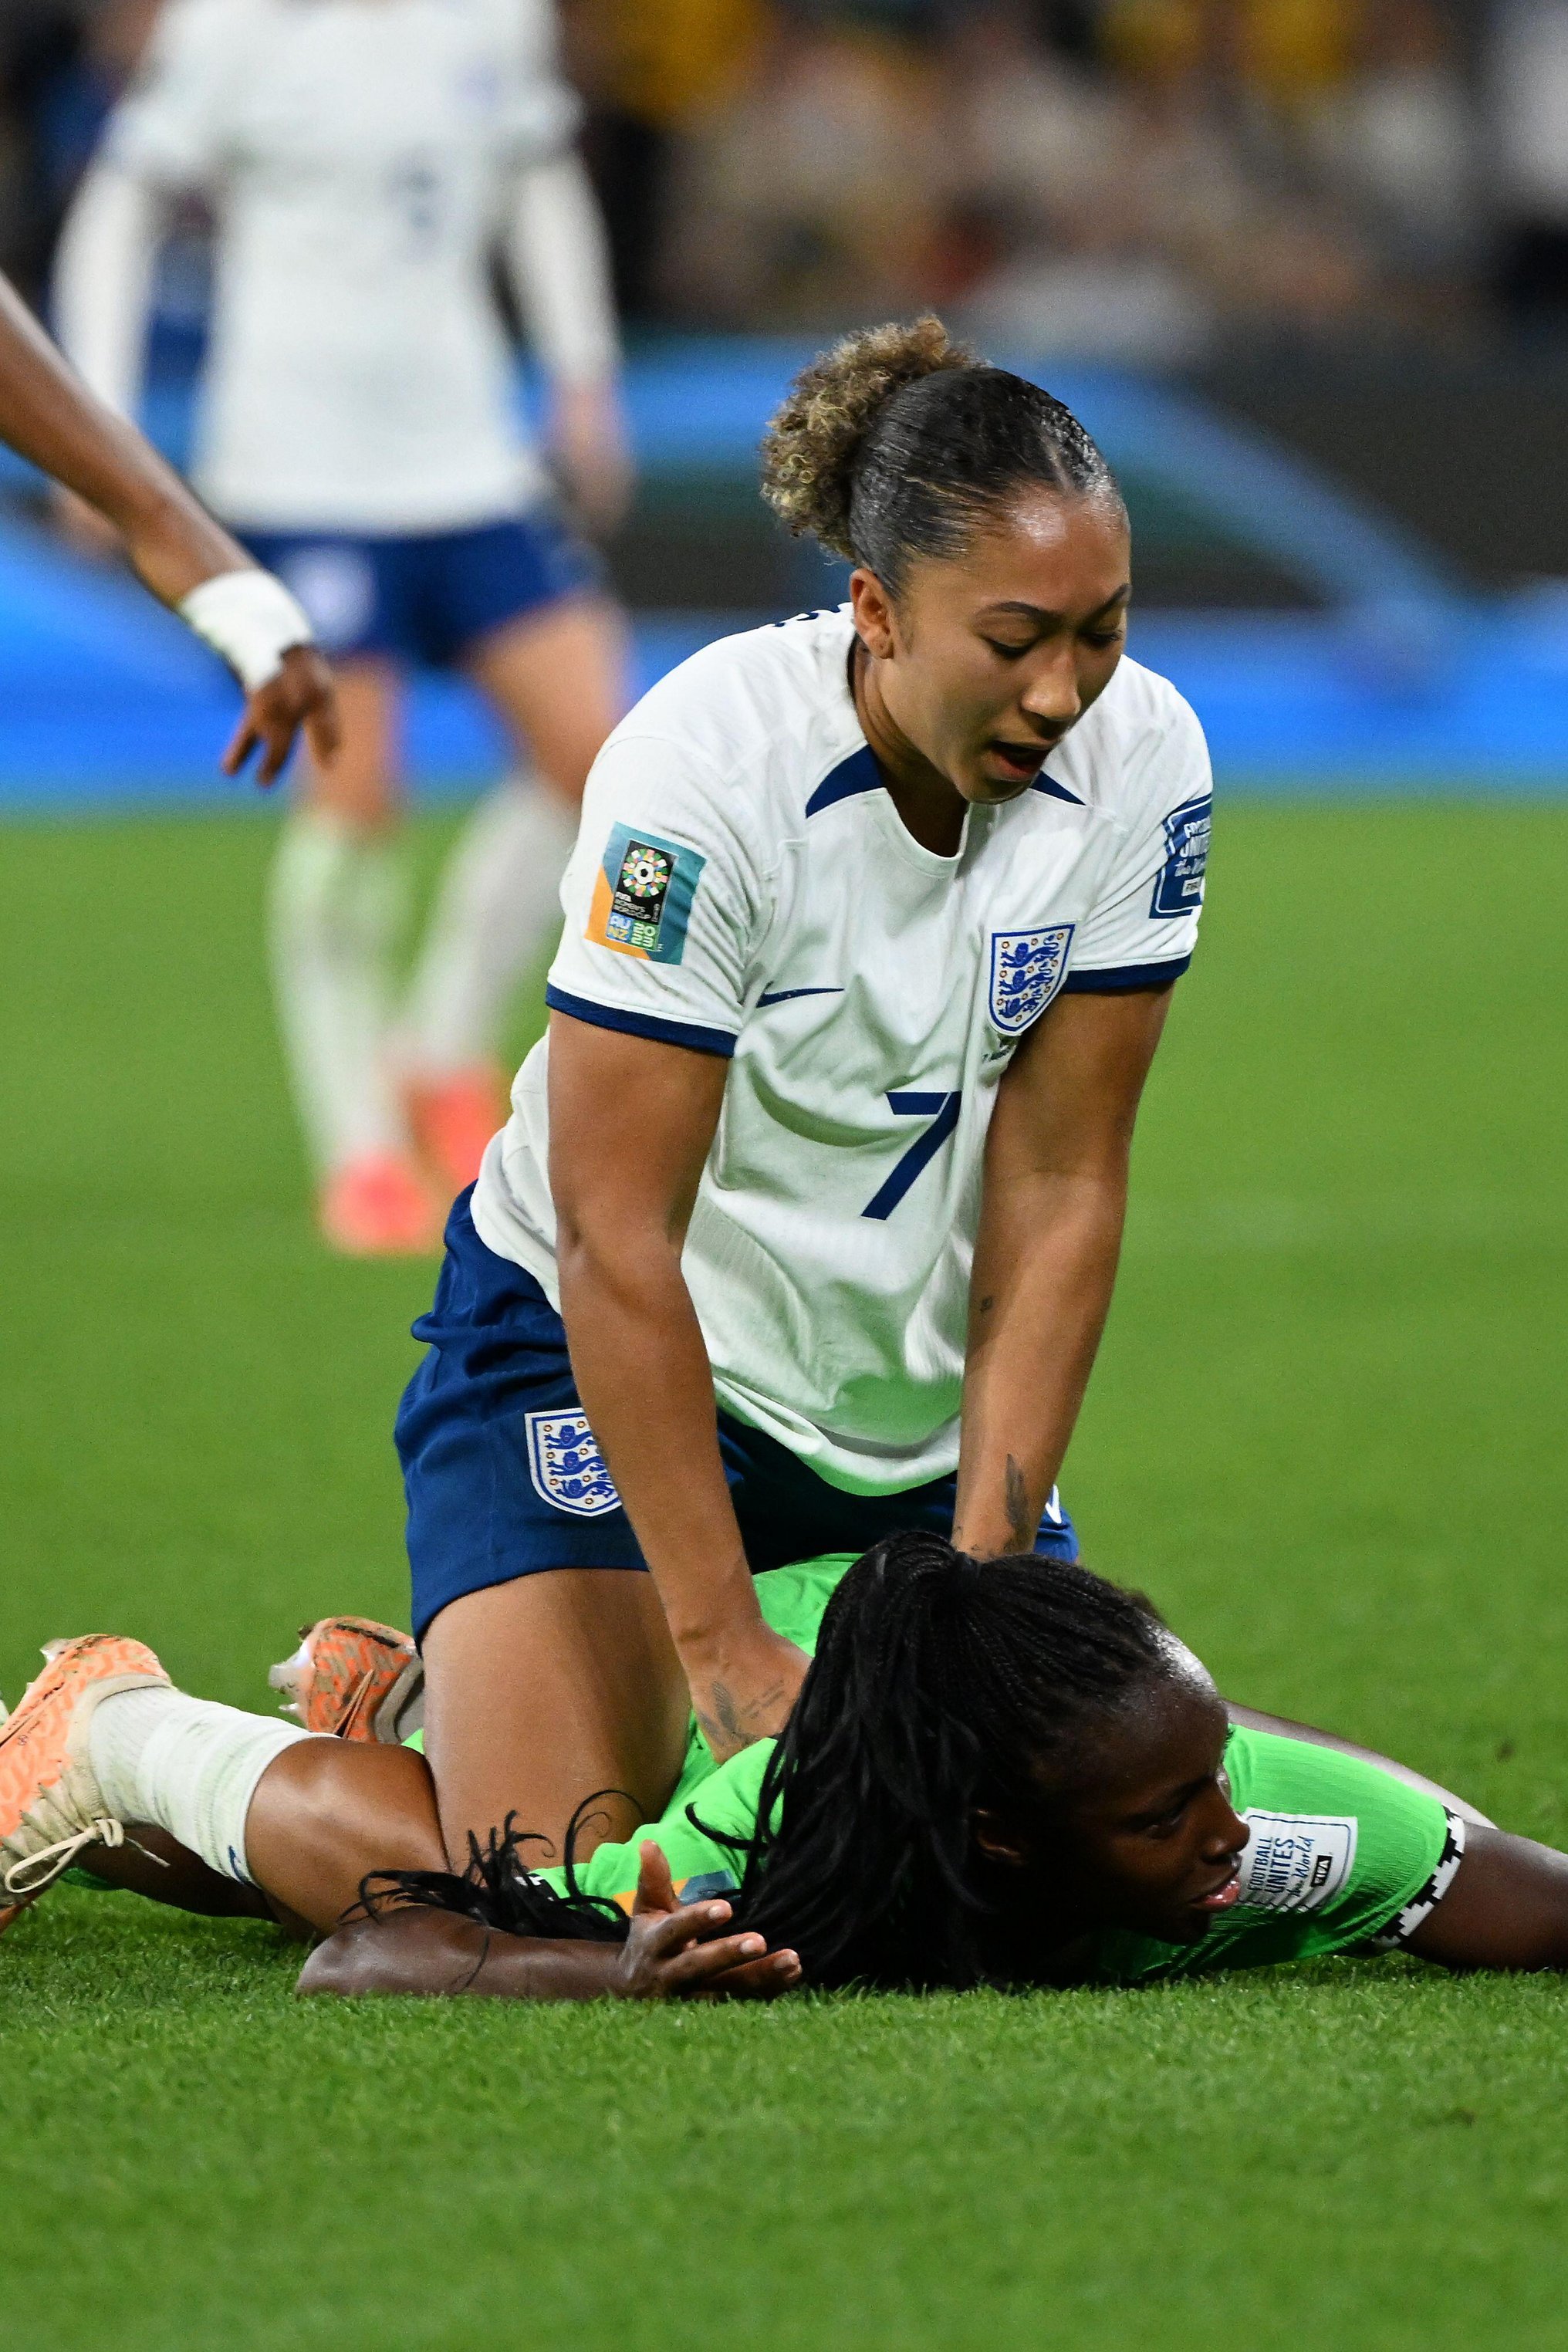 England muss im Spiel auf Lauren James verzichten, nachdem sie gegen Nigeria vom Platz gestellt wurde